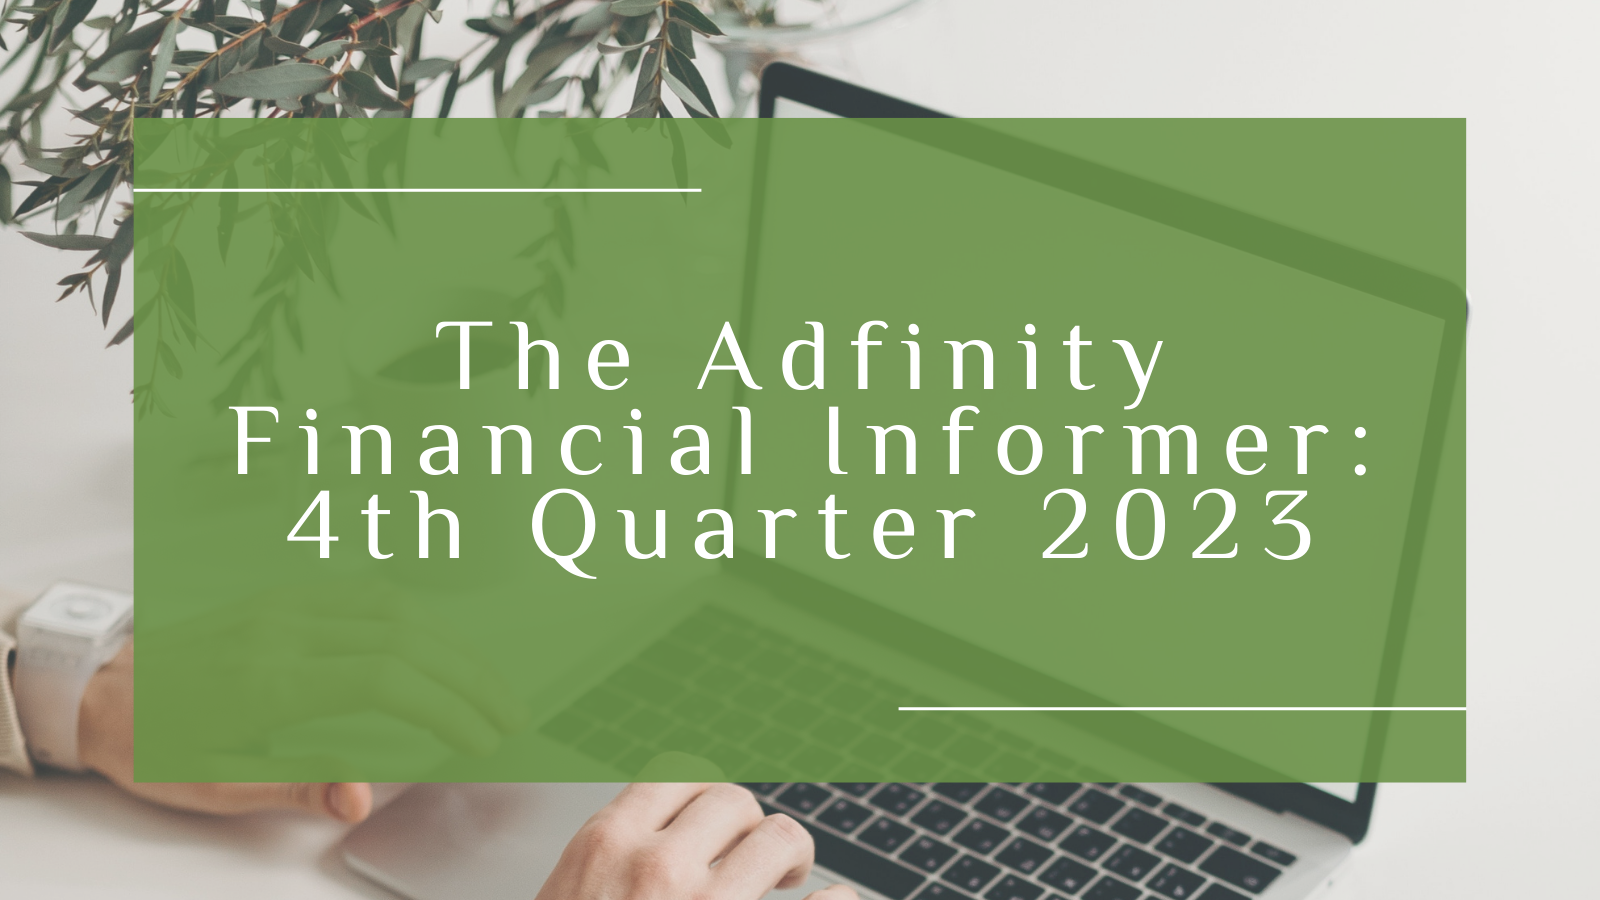 Adfinity Financial Informer 2023 (1)